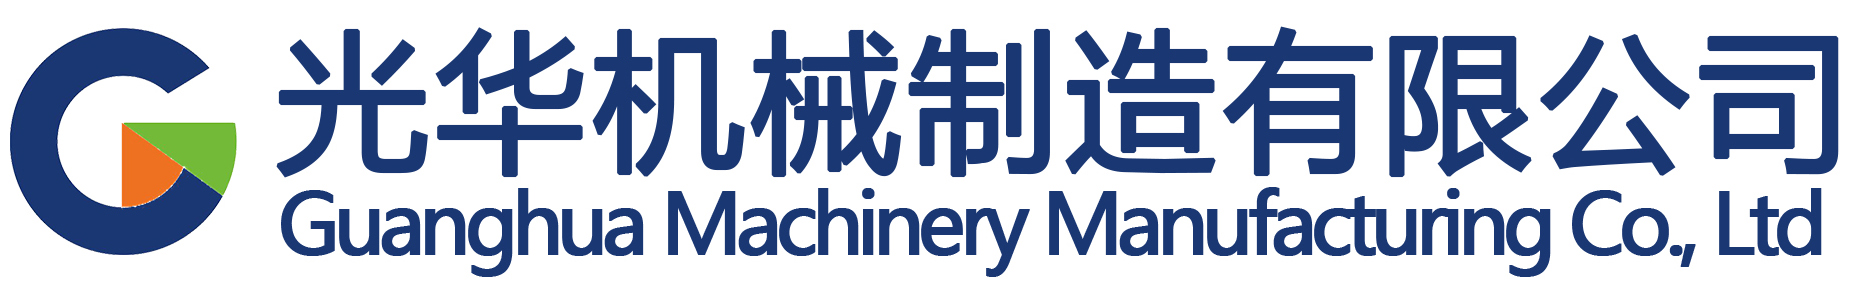 【网上下注平台】中国有限公司-产品系列1-光华机械智能门户网站